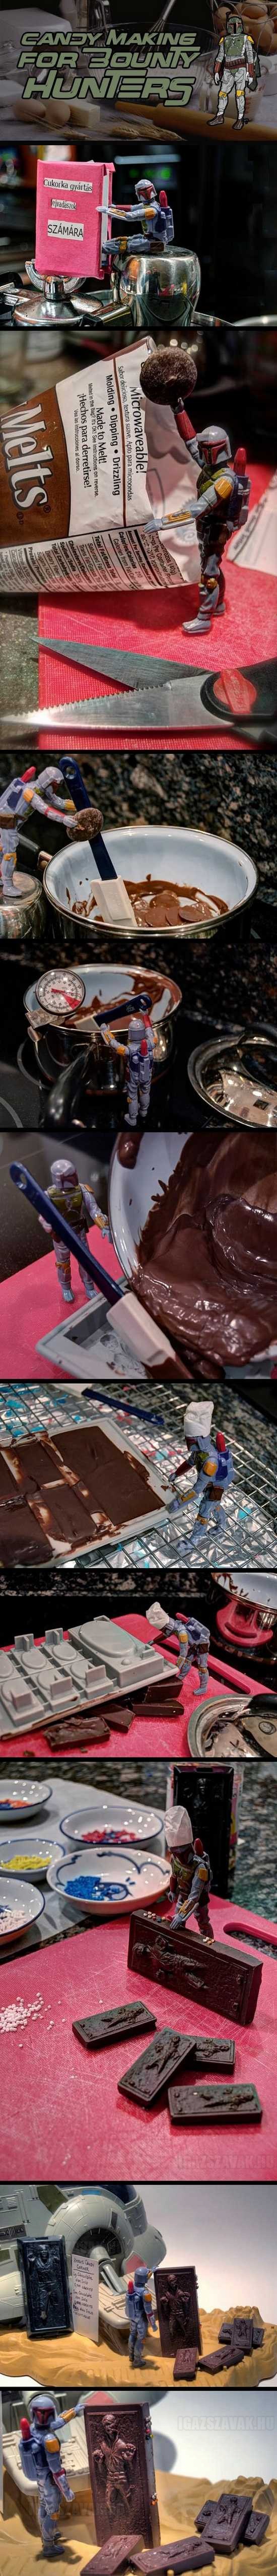 Boba Fett csokoládé Han Solokat készít